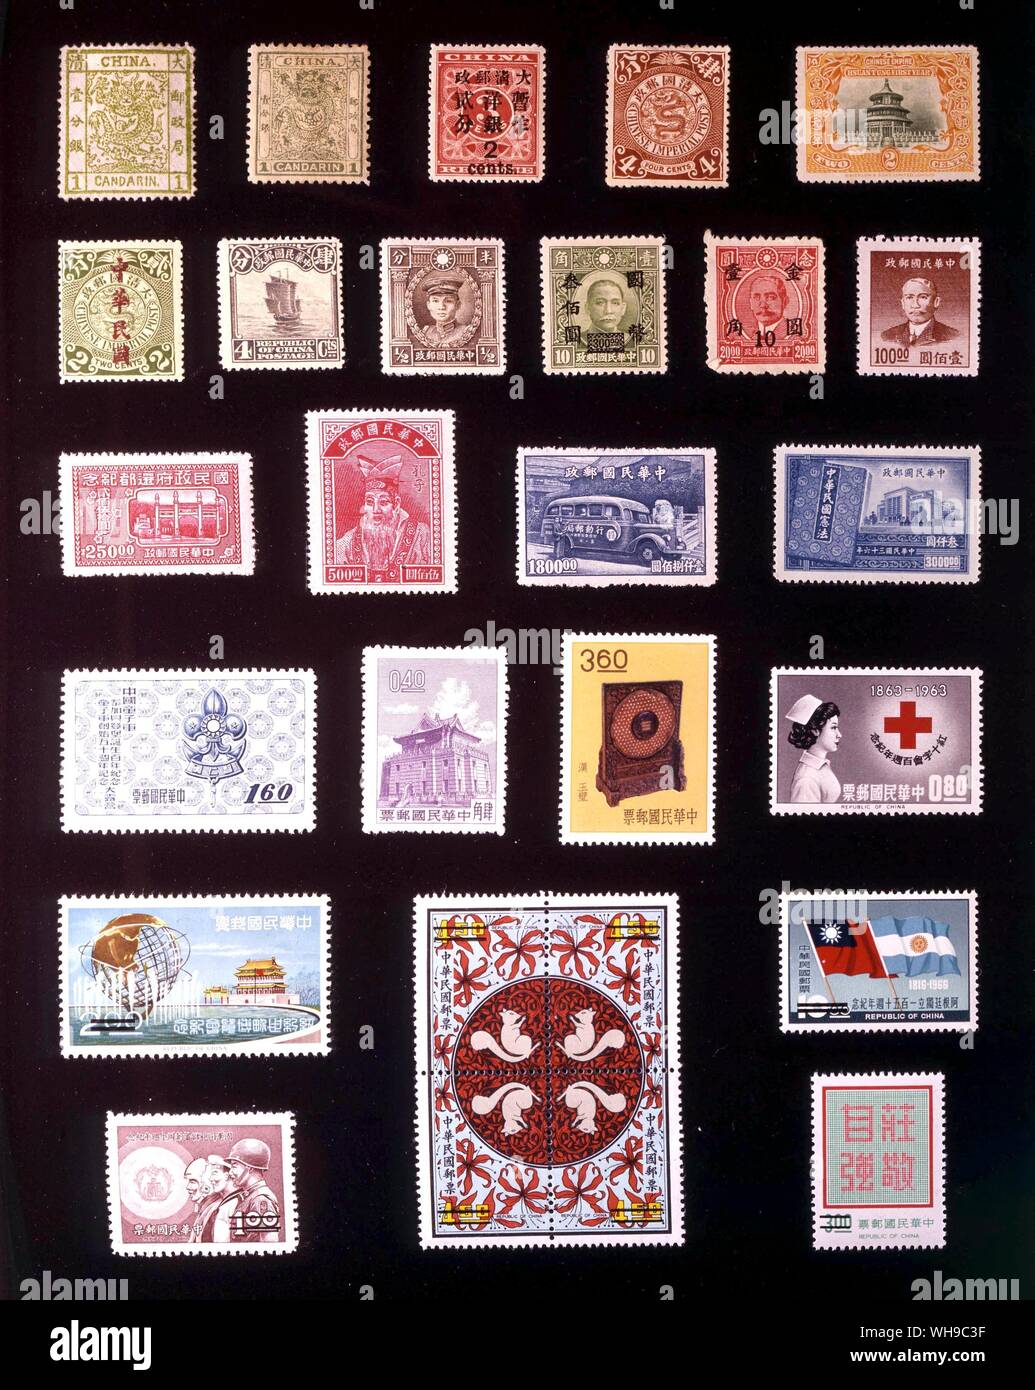 ASIA - CHINA: (left to right) 1. 1 candarin, 1878, 2. 1 candarin, 1885, 3. 2 cents, 1897, 4. 4 cents, 1898, 5. 2 cents, 1909, 6. 2 cents, 1912, 7. 4 cents, 1923, 8. 0.5 cent, 1932, 9. 300 yuan, 1946, 10. 10 cents, 1948, 11. 100 yuan, 1949, 12. 250 yuan, 1947, 13. 500 yuan, 1947, 14. 1,800 yuan, 1947, 15. 3,000 yuan, 1947, 16. 1.60 yuan, 1957, 17. 40 cents, 1960, 18. 3.60 yuan, 1962, 19. 80 cents, 1963, 20. 2 yuan, 1965, 21. 10 yuan, 1966, 22. 1 yuan, 1969, 23. 4.50 yuan, 1971, 24. 3 yuan, 1972. Stock Photo